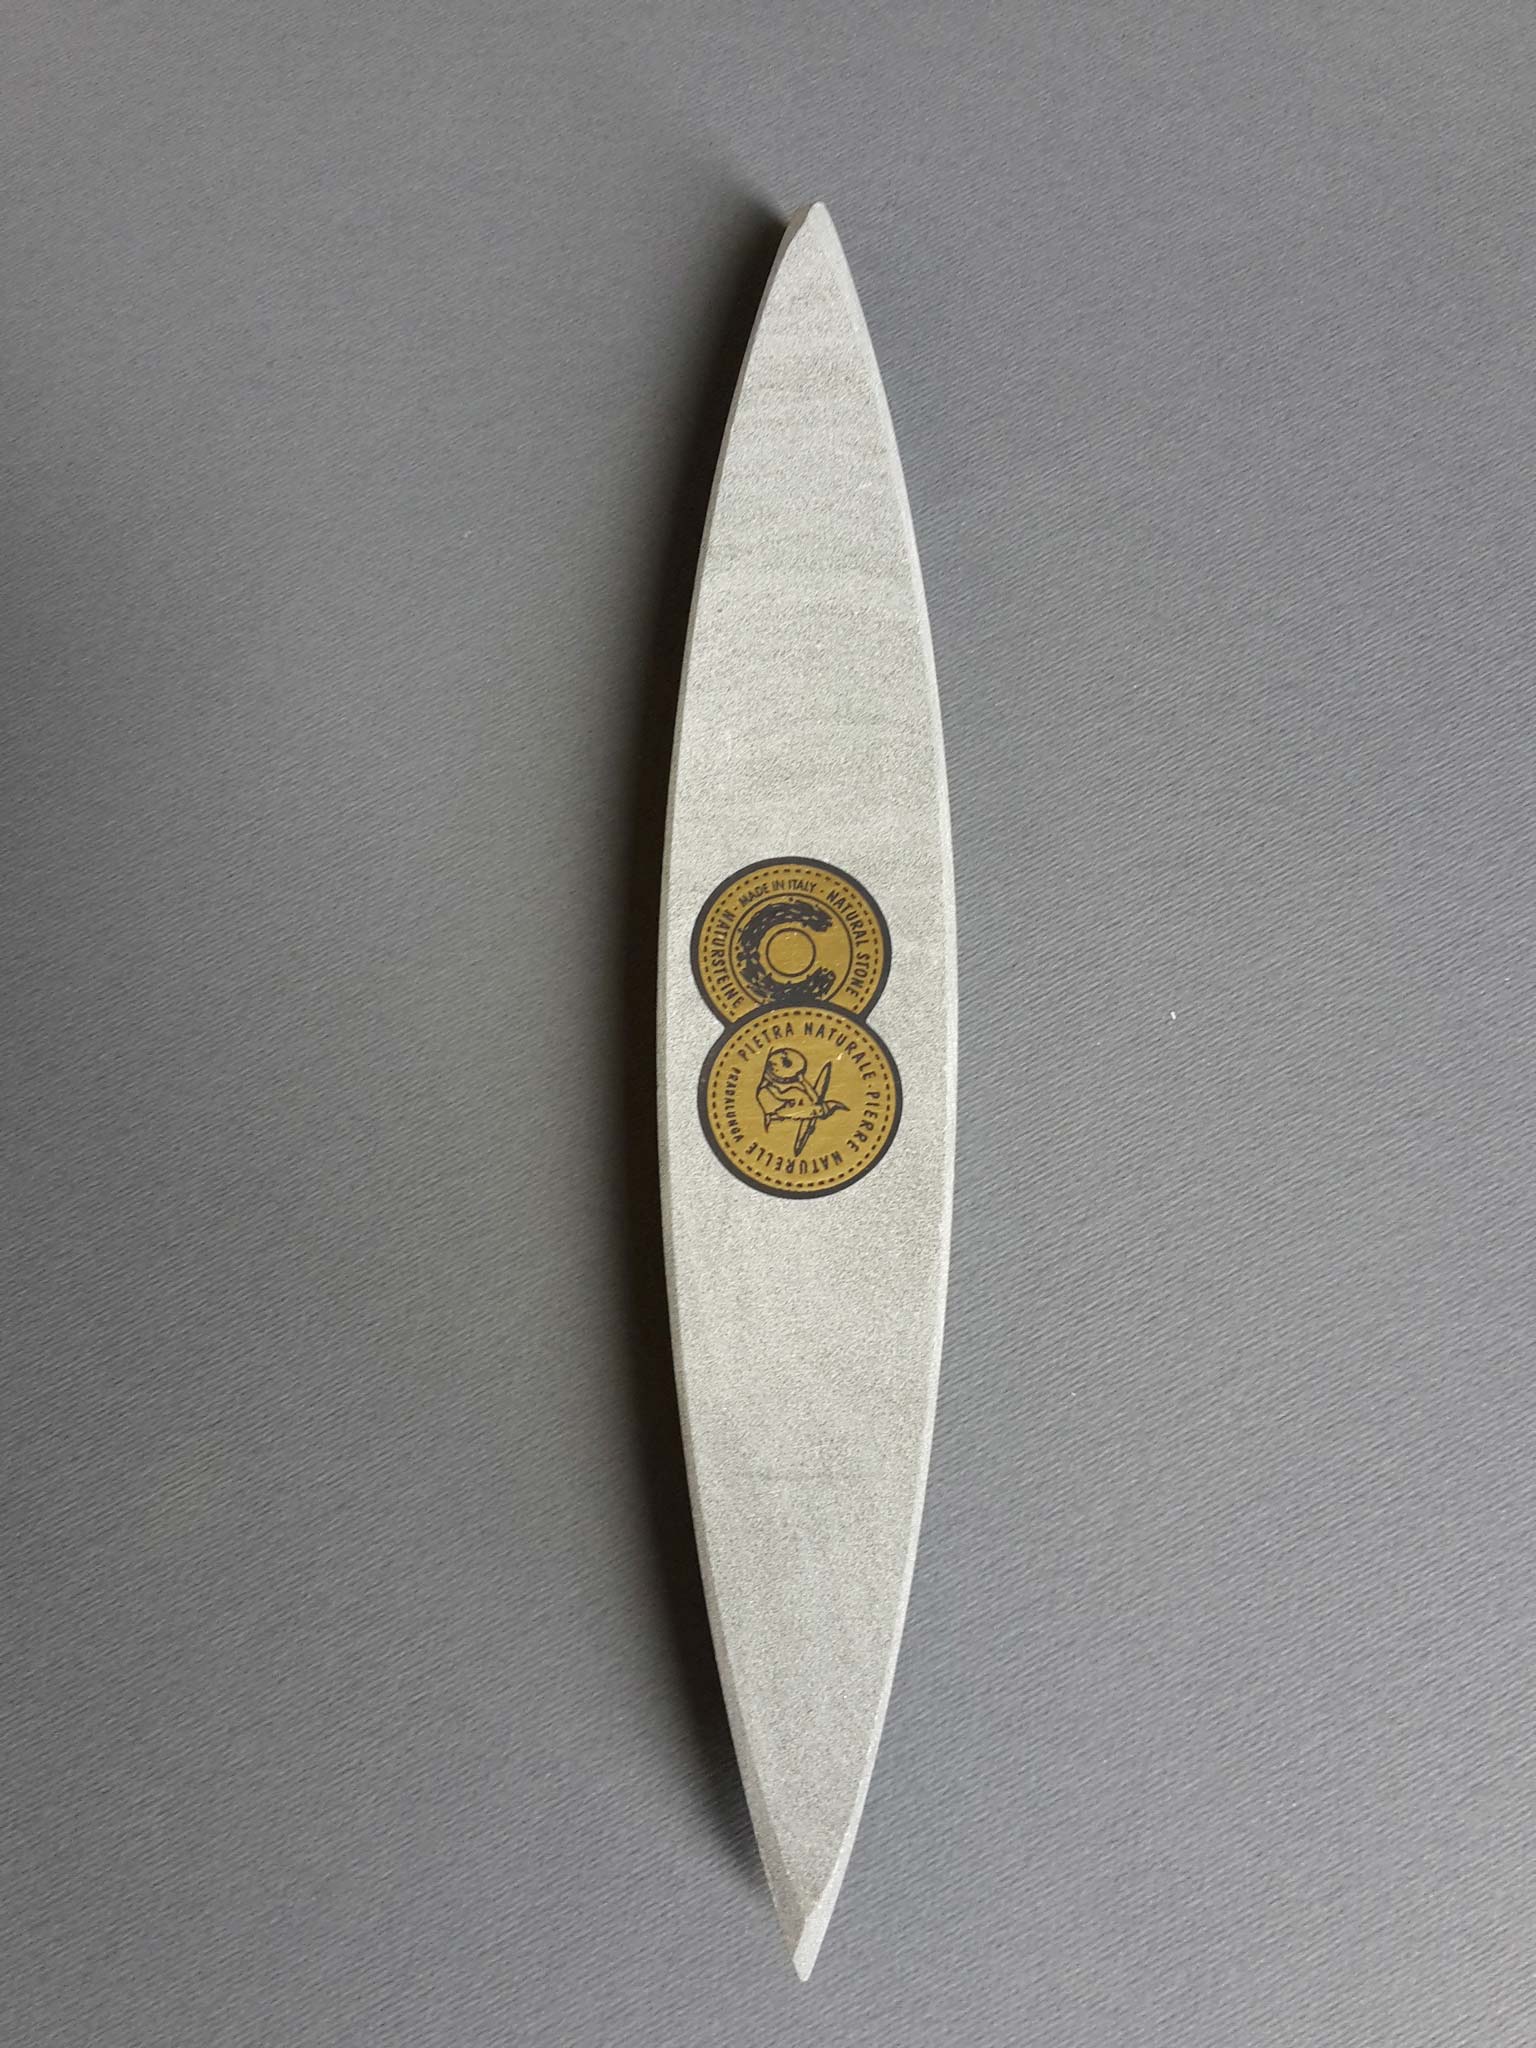 Pietra affilatura coltelli grana 400/2000 WUSTHOF 4450: prezzi e vendita  online